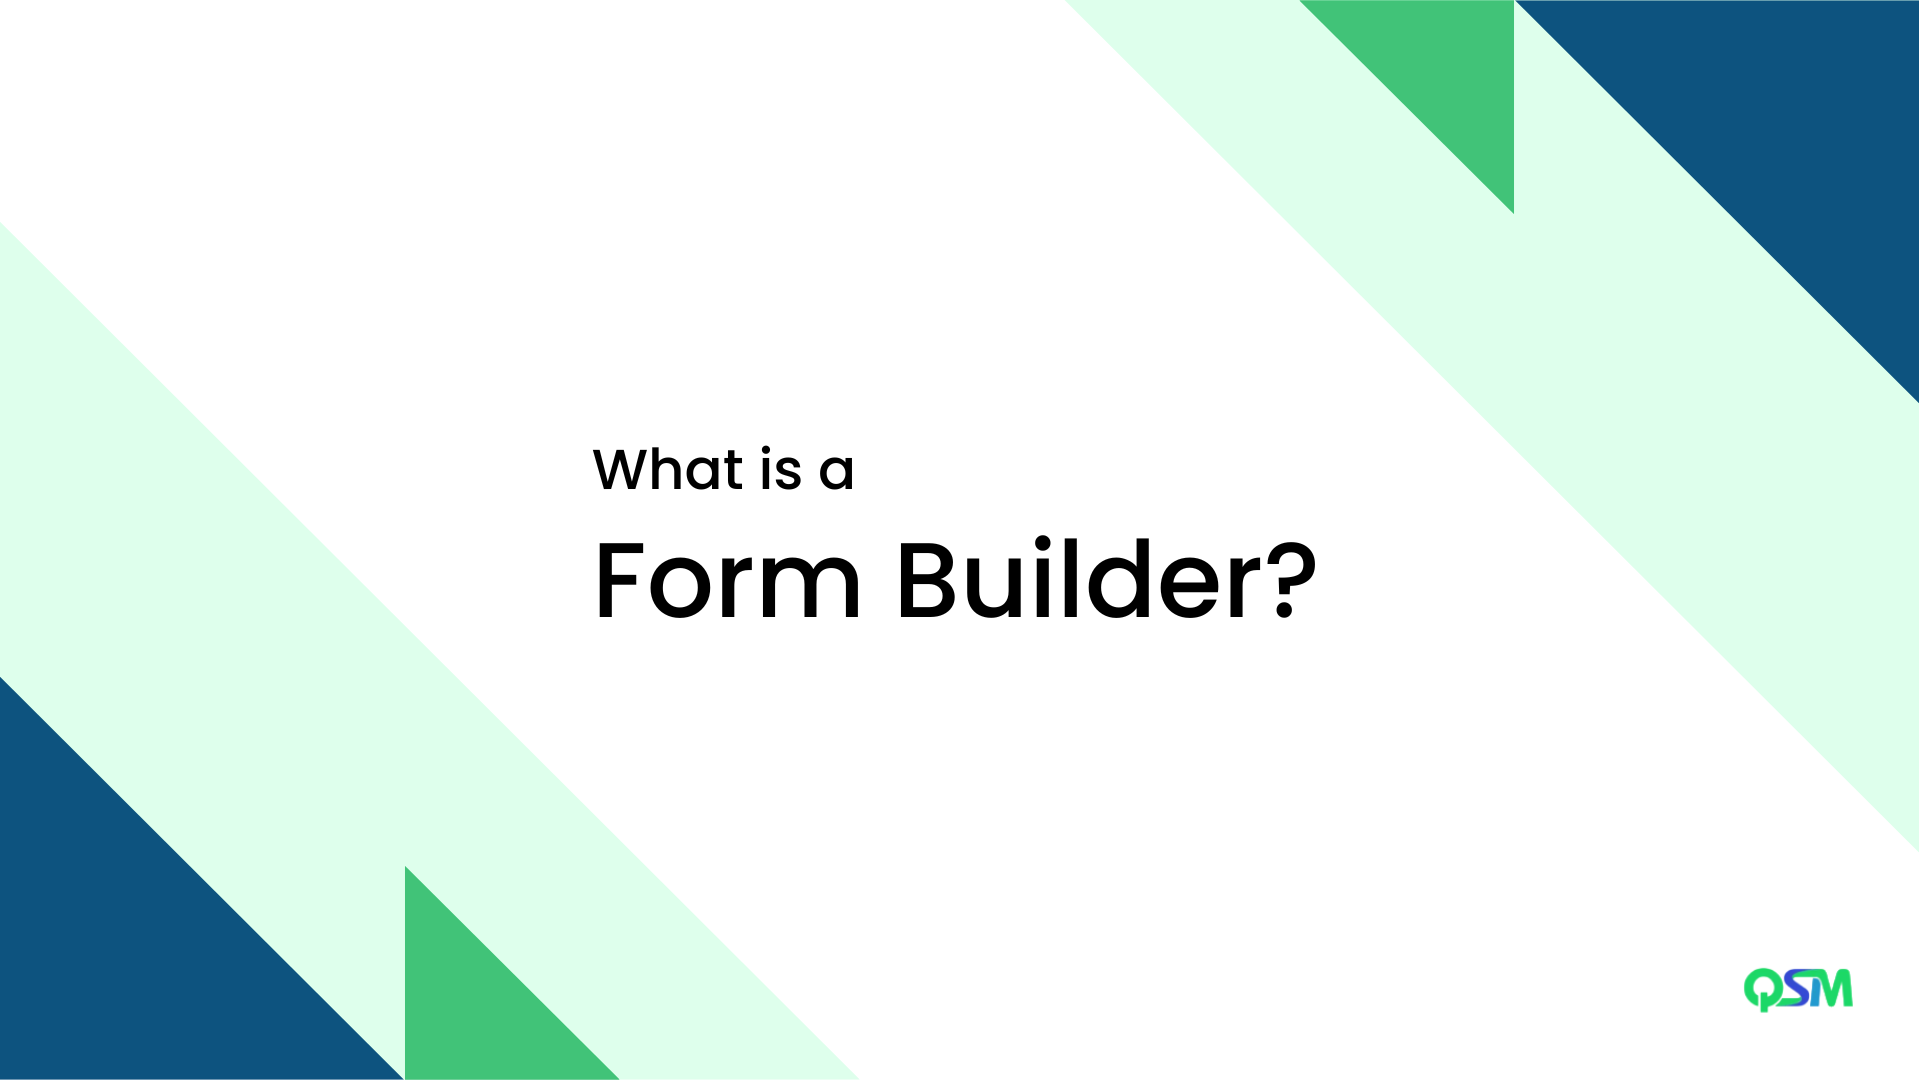 Survey Monkey vs Google Forms vs QSM: What is a Form Builder?